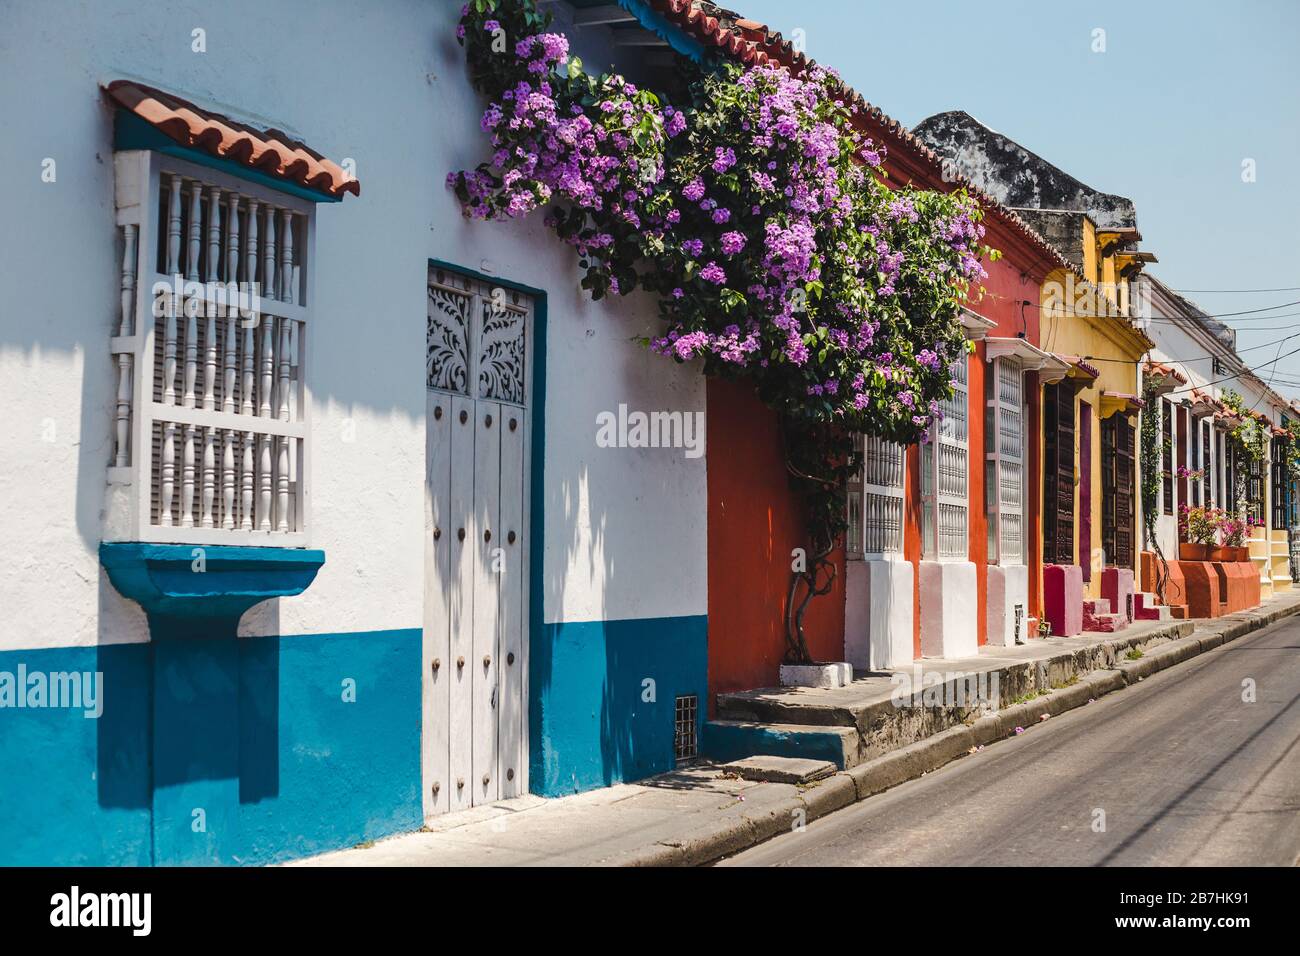 Rue résidentielle typique peinte en couleur couverte de fleurs à Cartagena de Indias, Colombie Banque D'Images